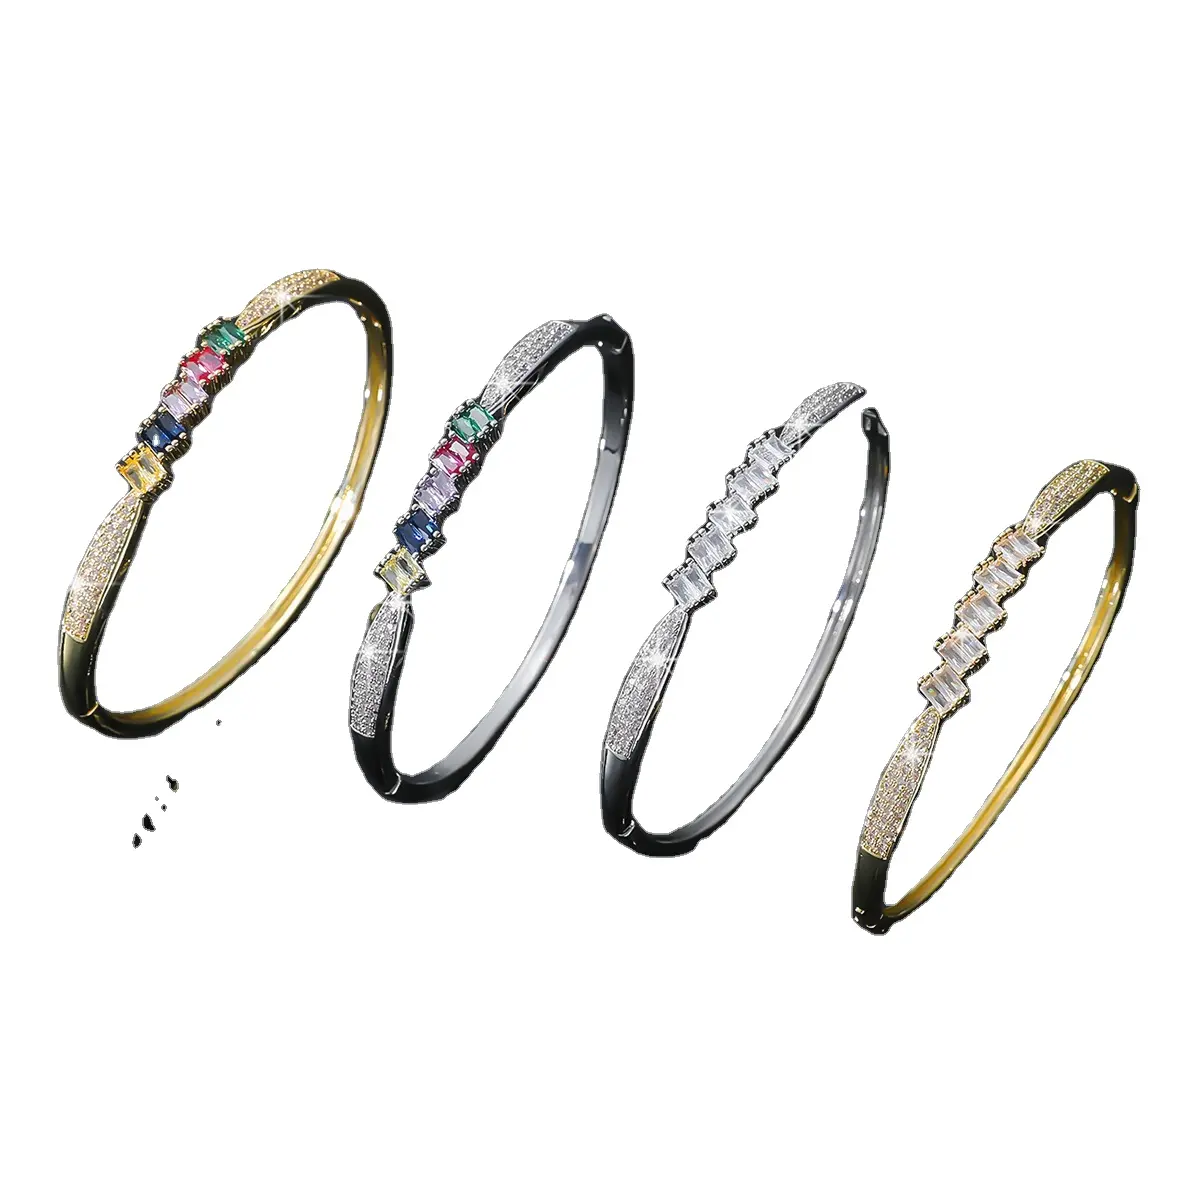 Pulseiras e pulseiras de joias de grife fashion bangkok brincos pulseiras banhadas a ouro 18K pulseira de ouro 18K saudita ar